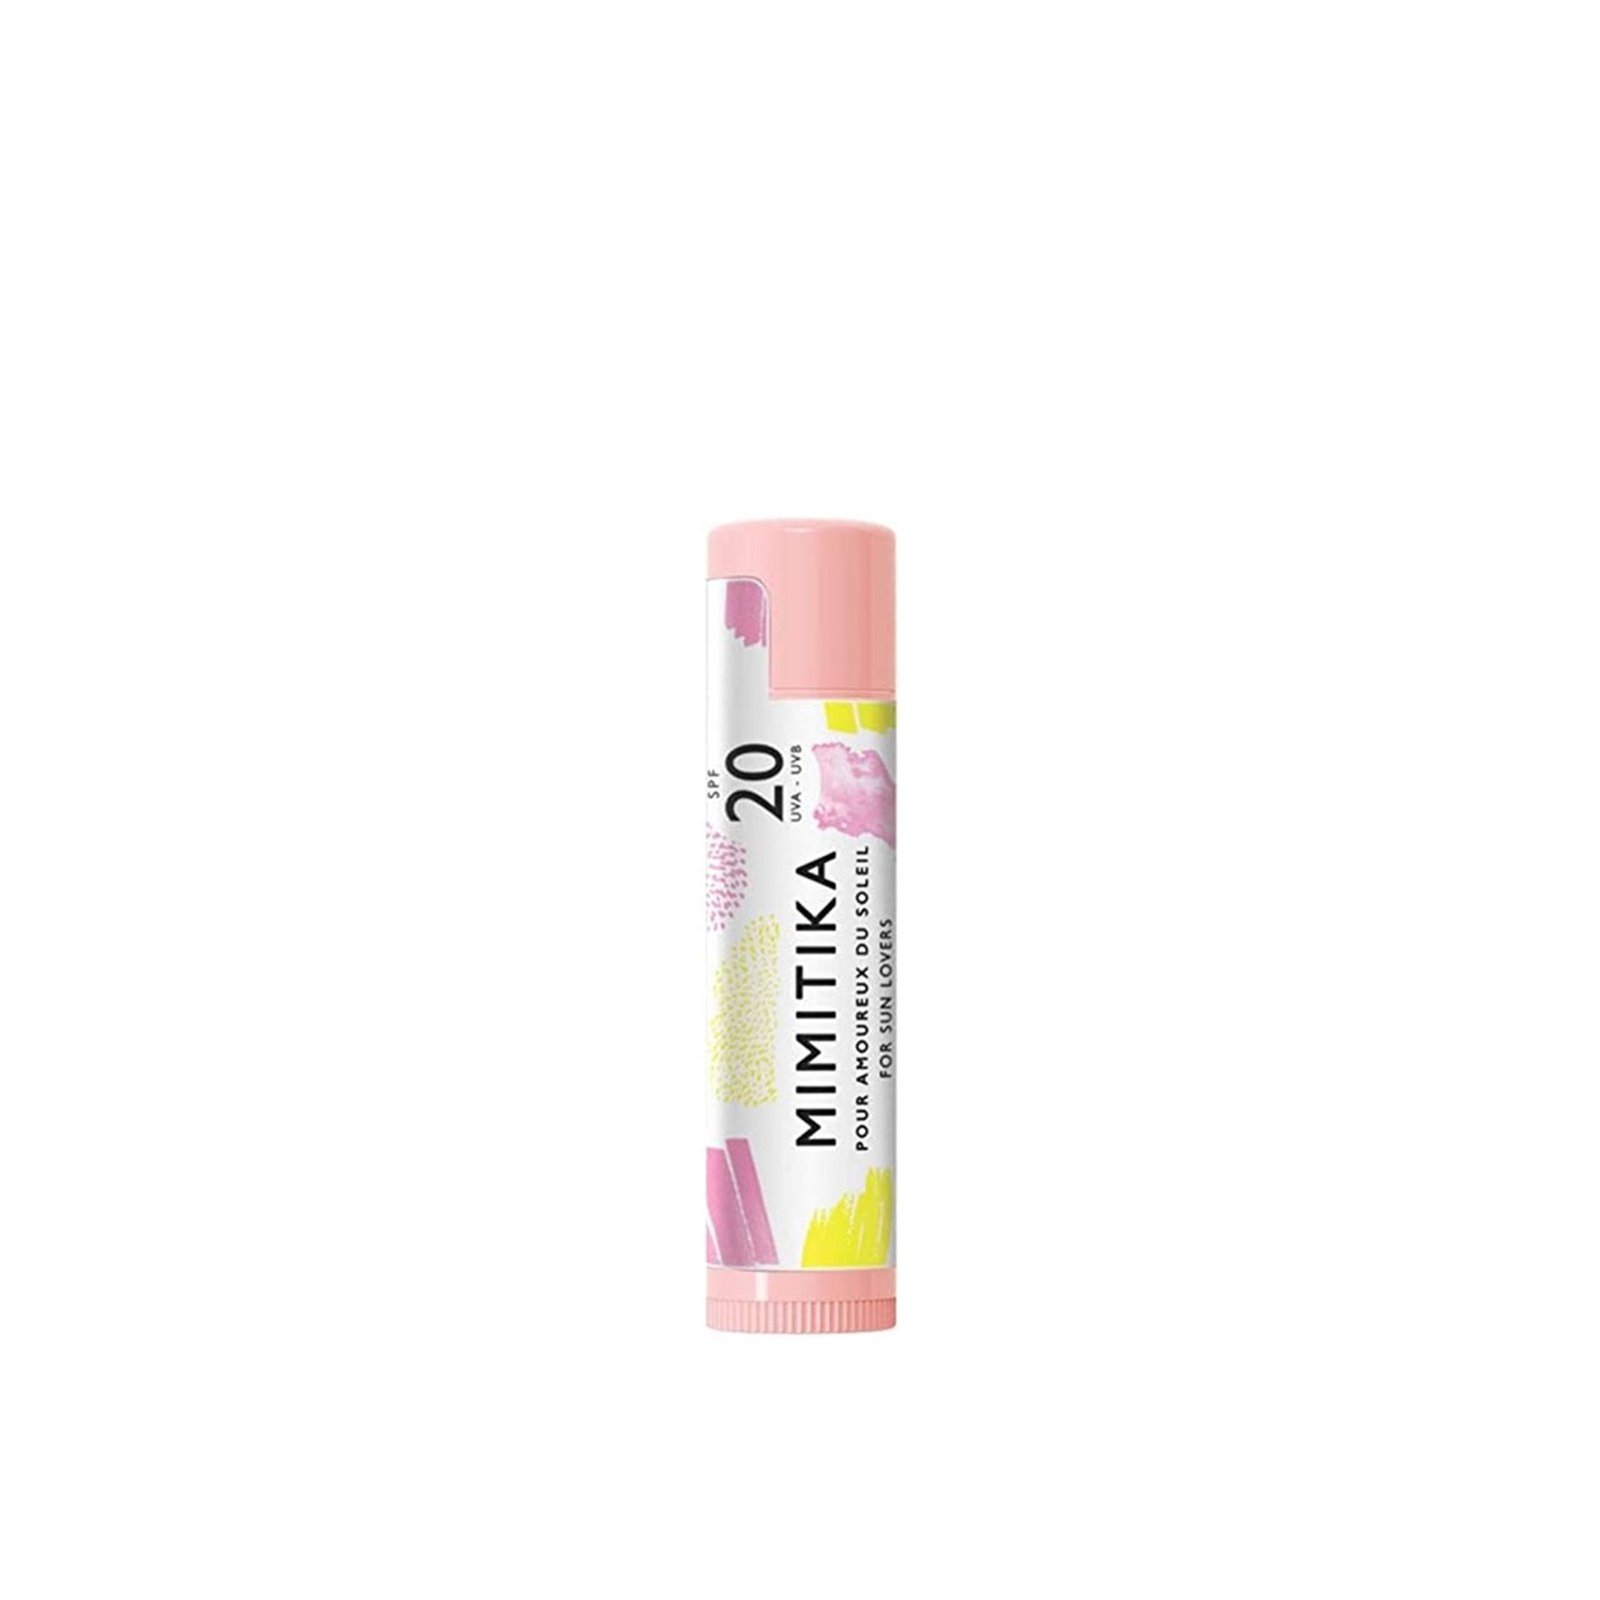 MIMITIKA Sunscreen Lip Balm SPF20 4.25g